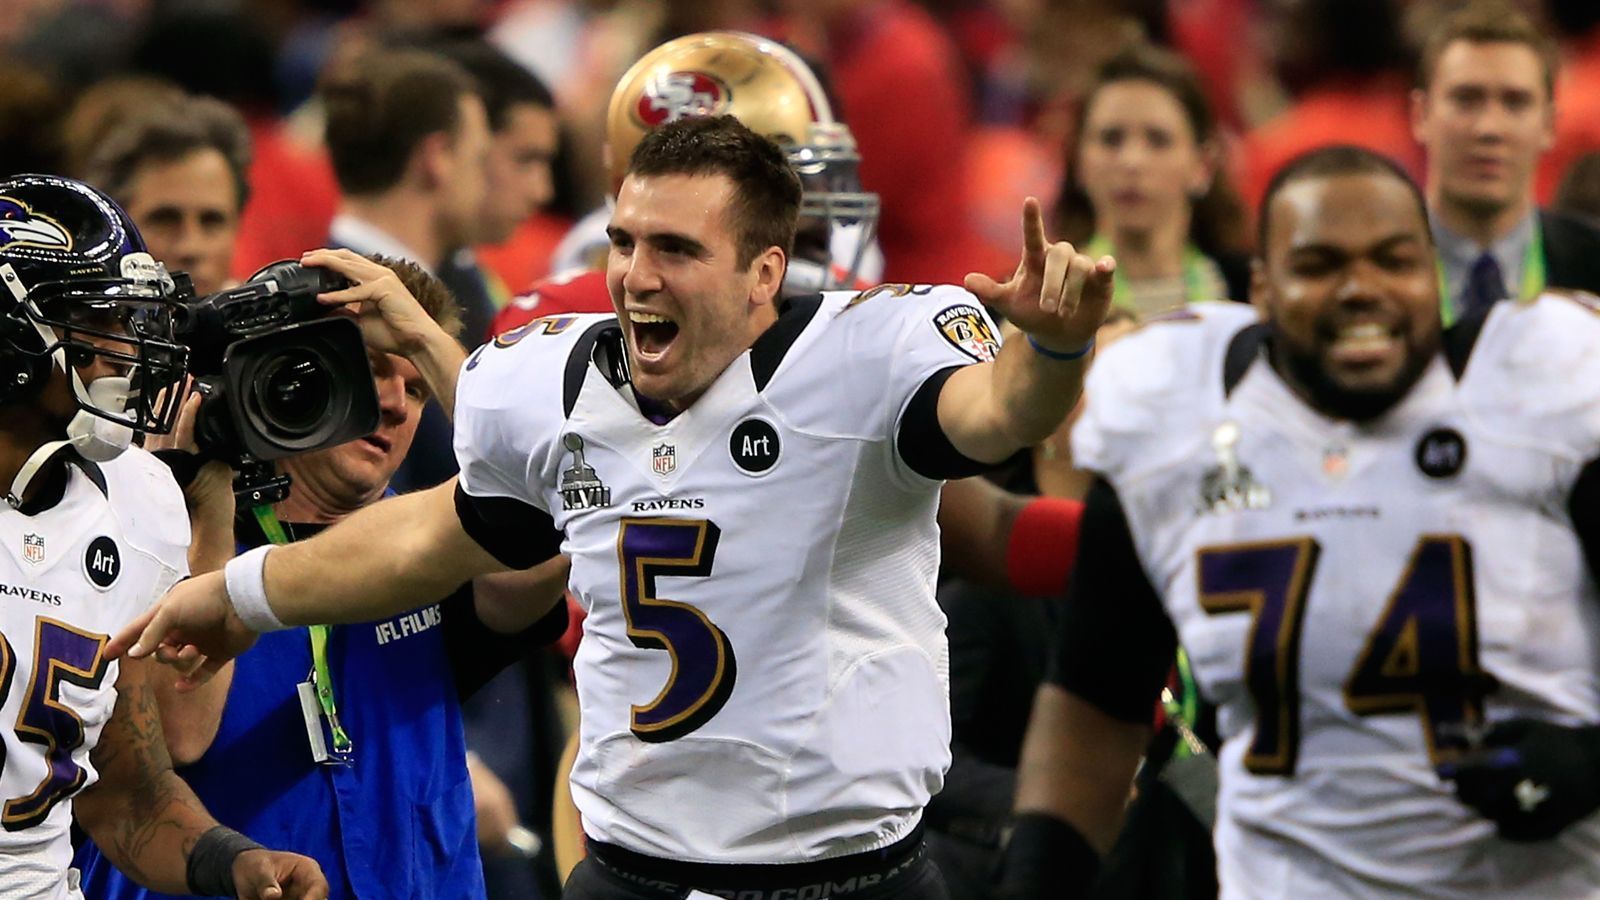 
                <strong>2013 - Super Bowl XLVII - Baltimore Ravens</strong><br>
                2013 ließen sich am Ende die Baltimore Ravens feiern. Mit 34:31 besiegten sie die San Francisco 49ers und sicherten sich zum zweiten Mal den Super-Bowl-Titel.
              